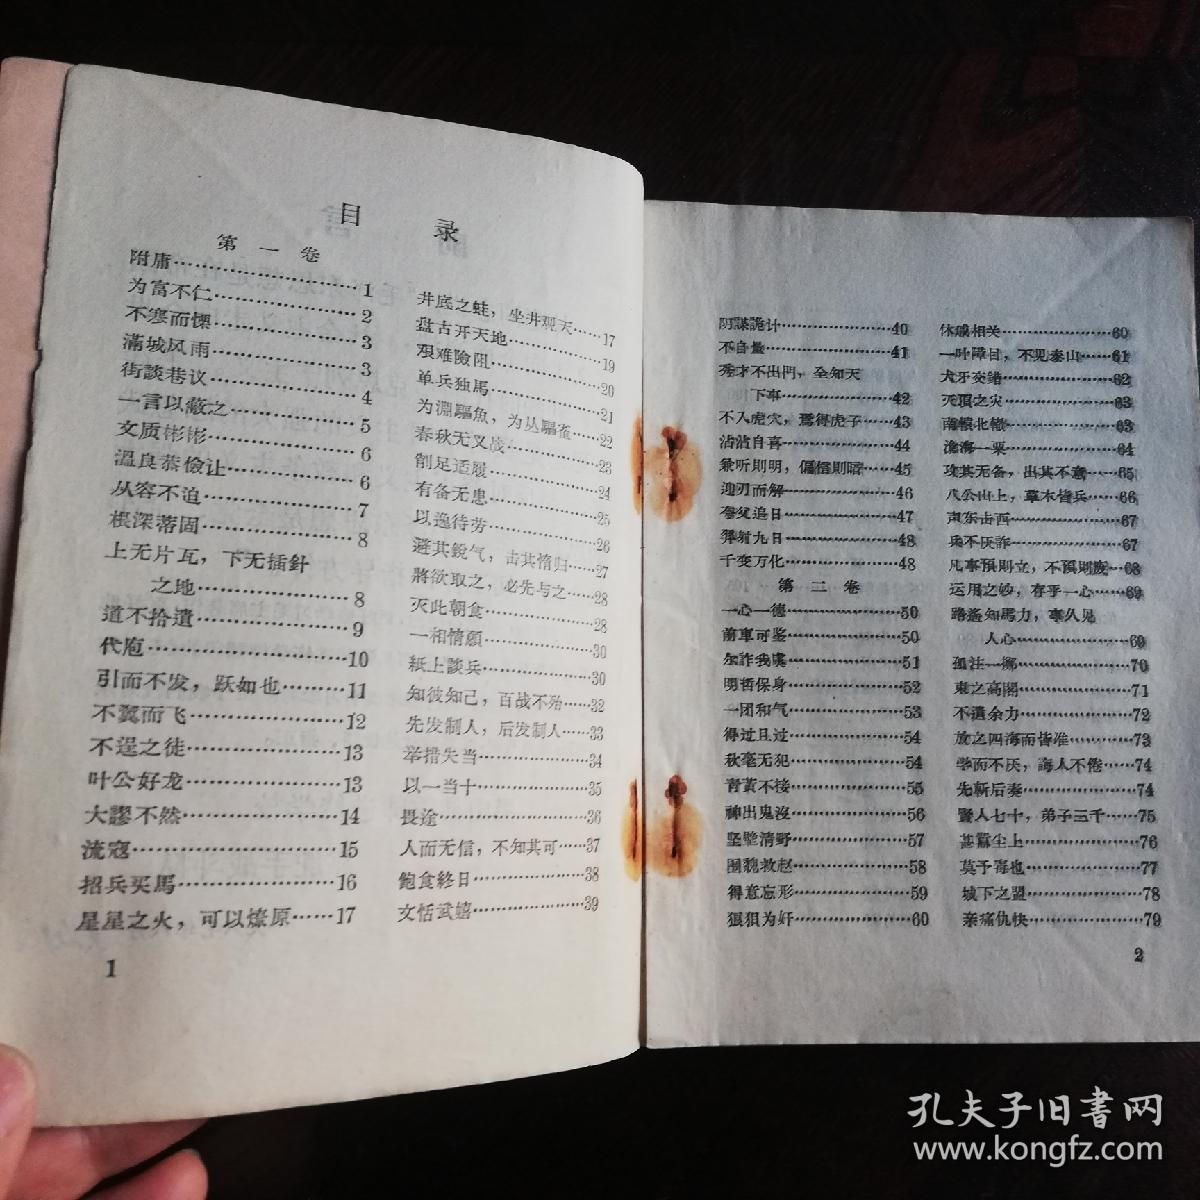 《毛泽东选集》成语典故解释(1一4)卷